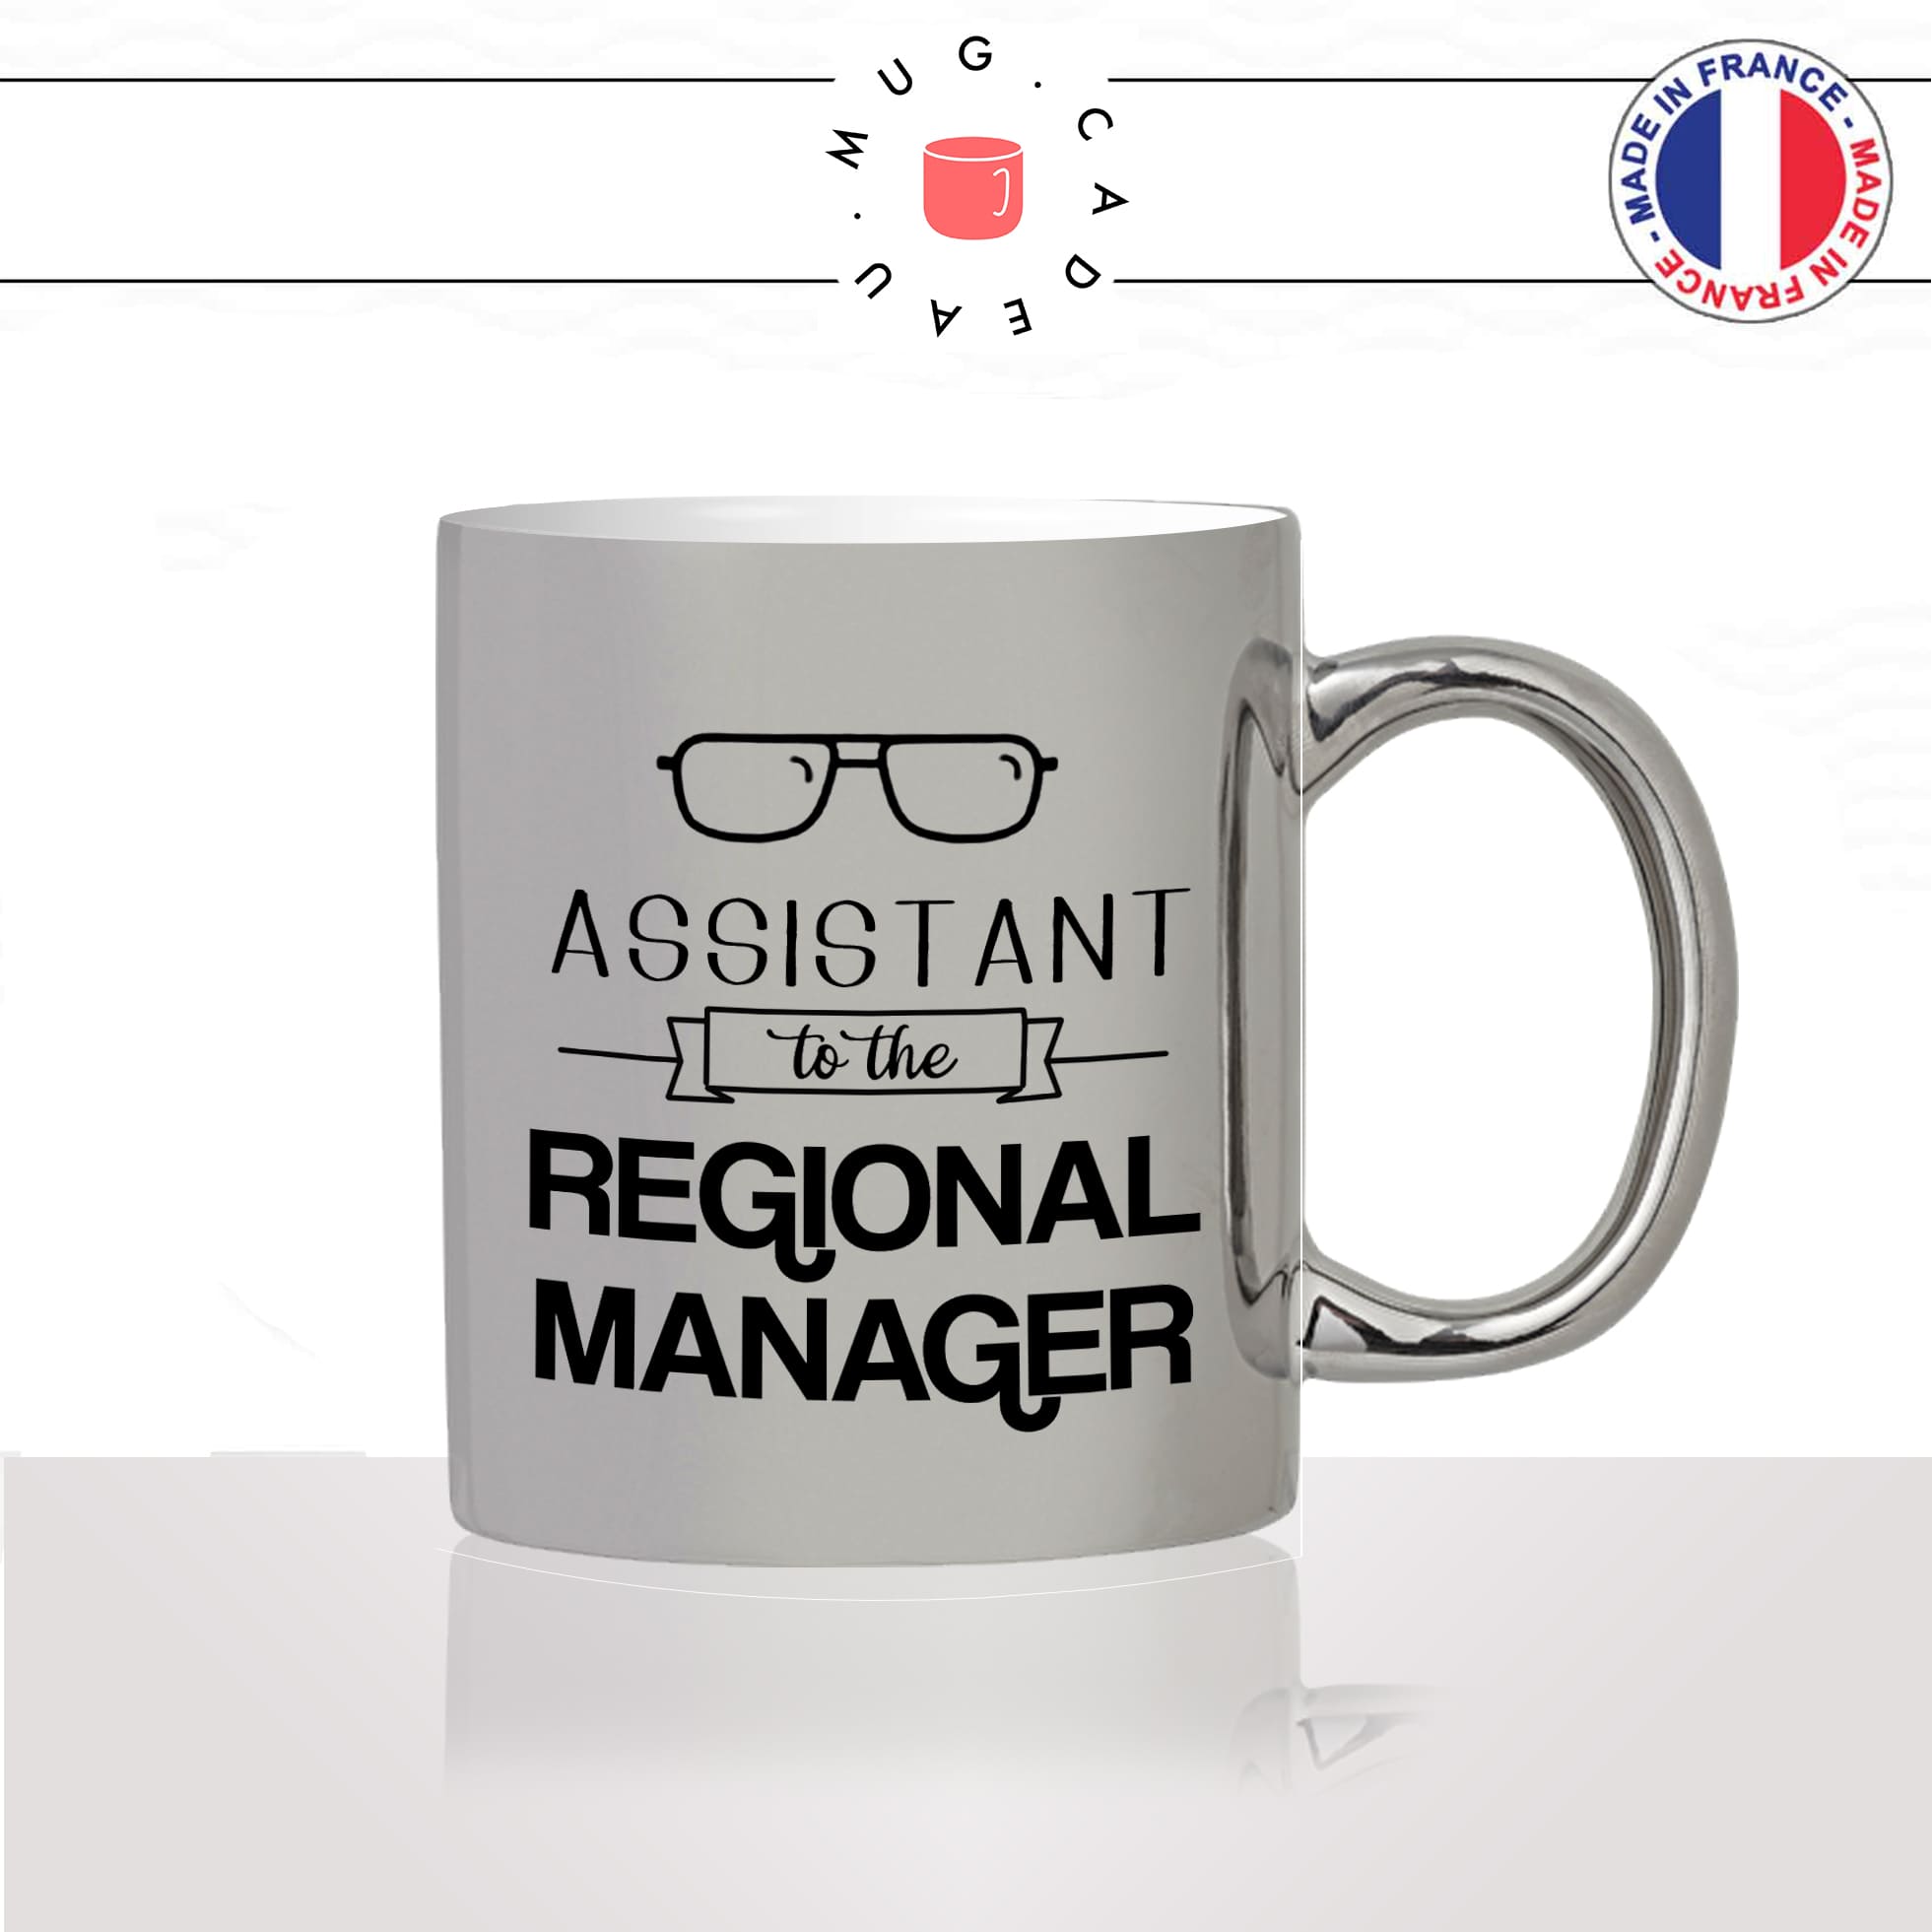 mug-tasse-argent-argenté-silver-série-the-office-dwight-assistant-to-the-regional-manager-michael-scott-idée-cadeau-fun-cool-café-thé2